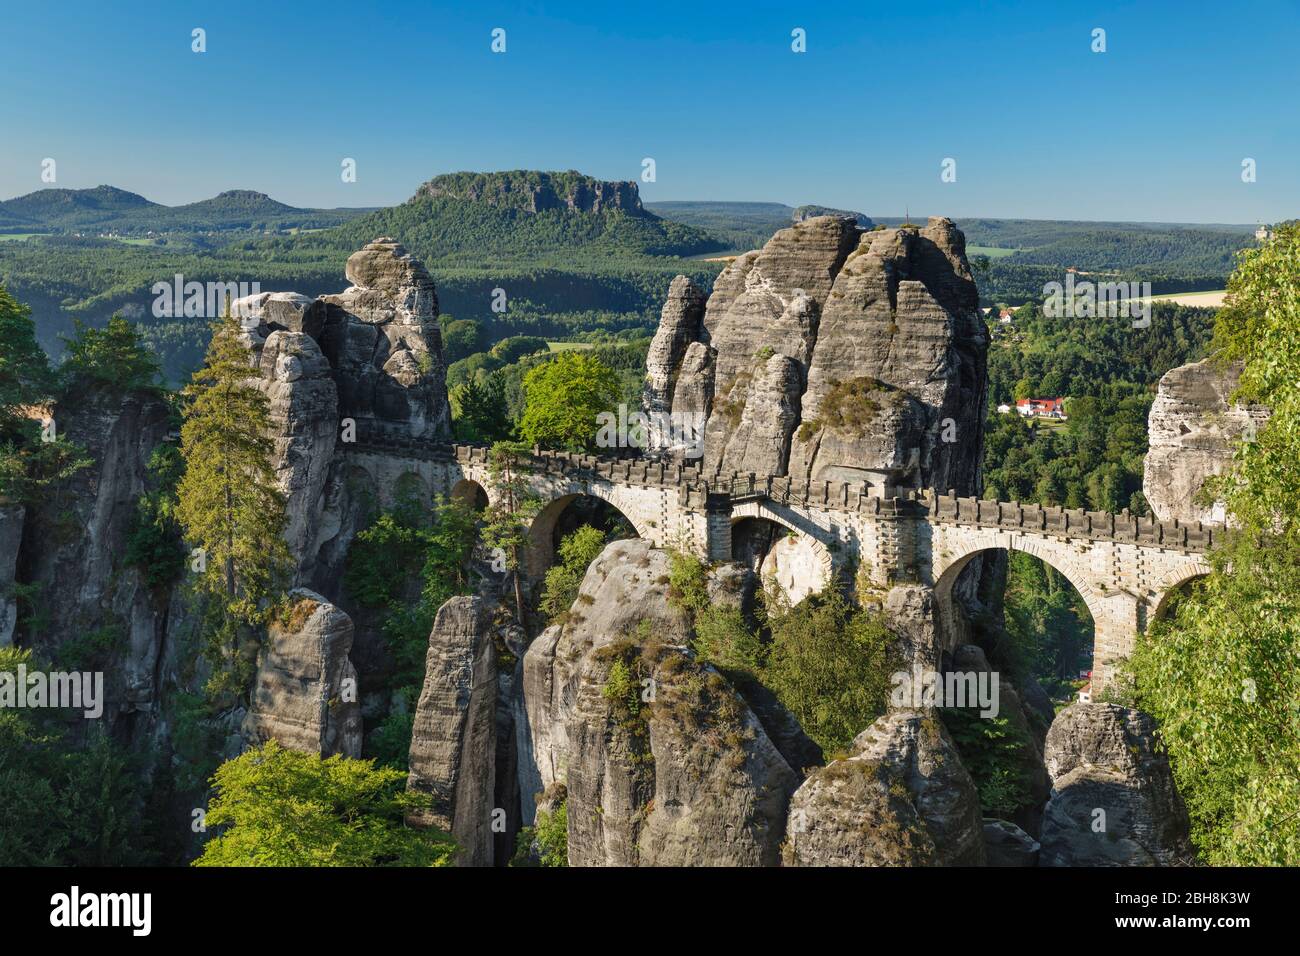 Basteibrücke, Bastei bei Rathen, Elbsandsteingebirge, Nationalpark Sächsische Schweiz, Sachsen, Deutschland Foto Stock